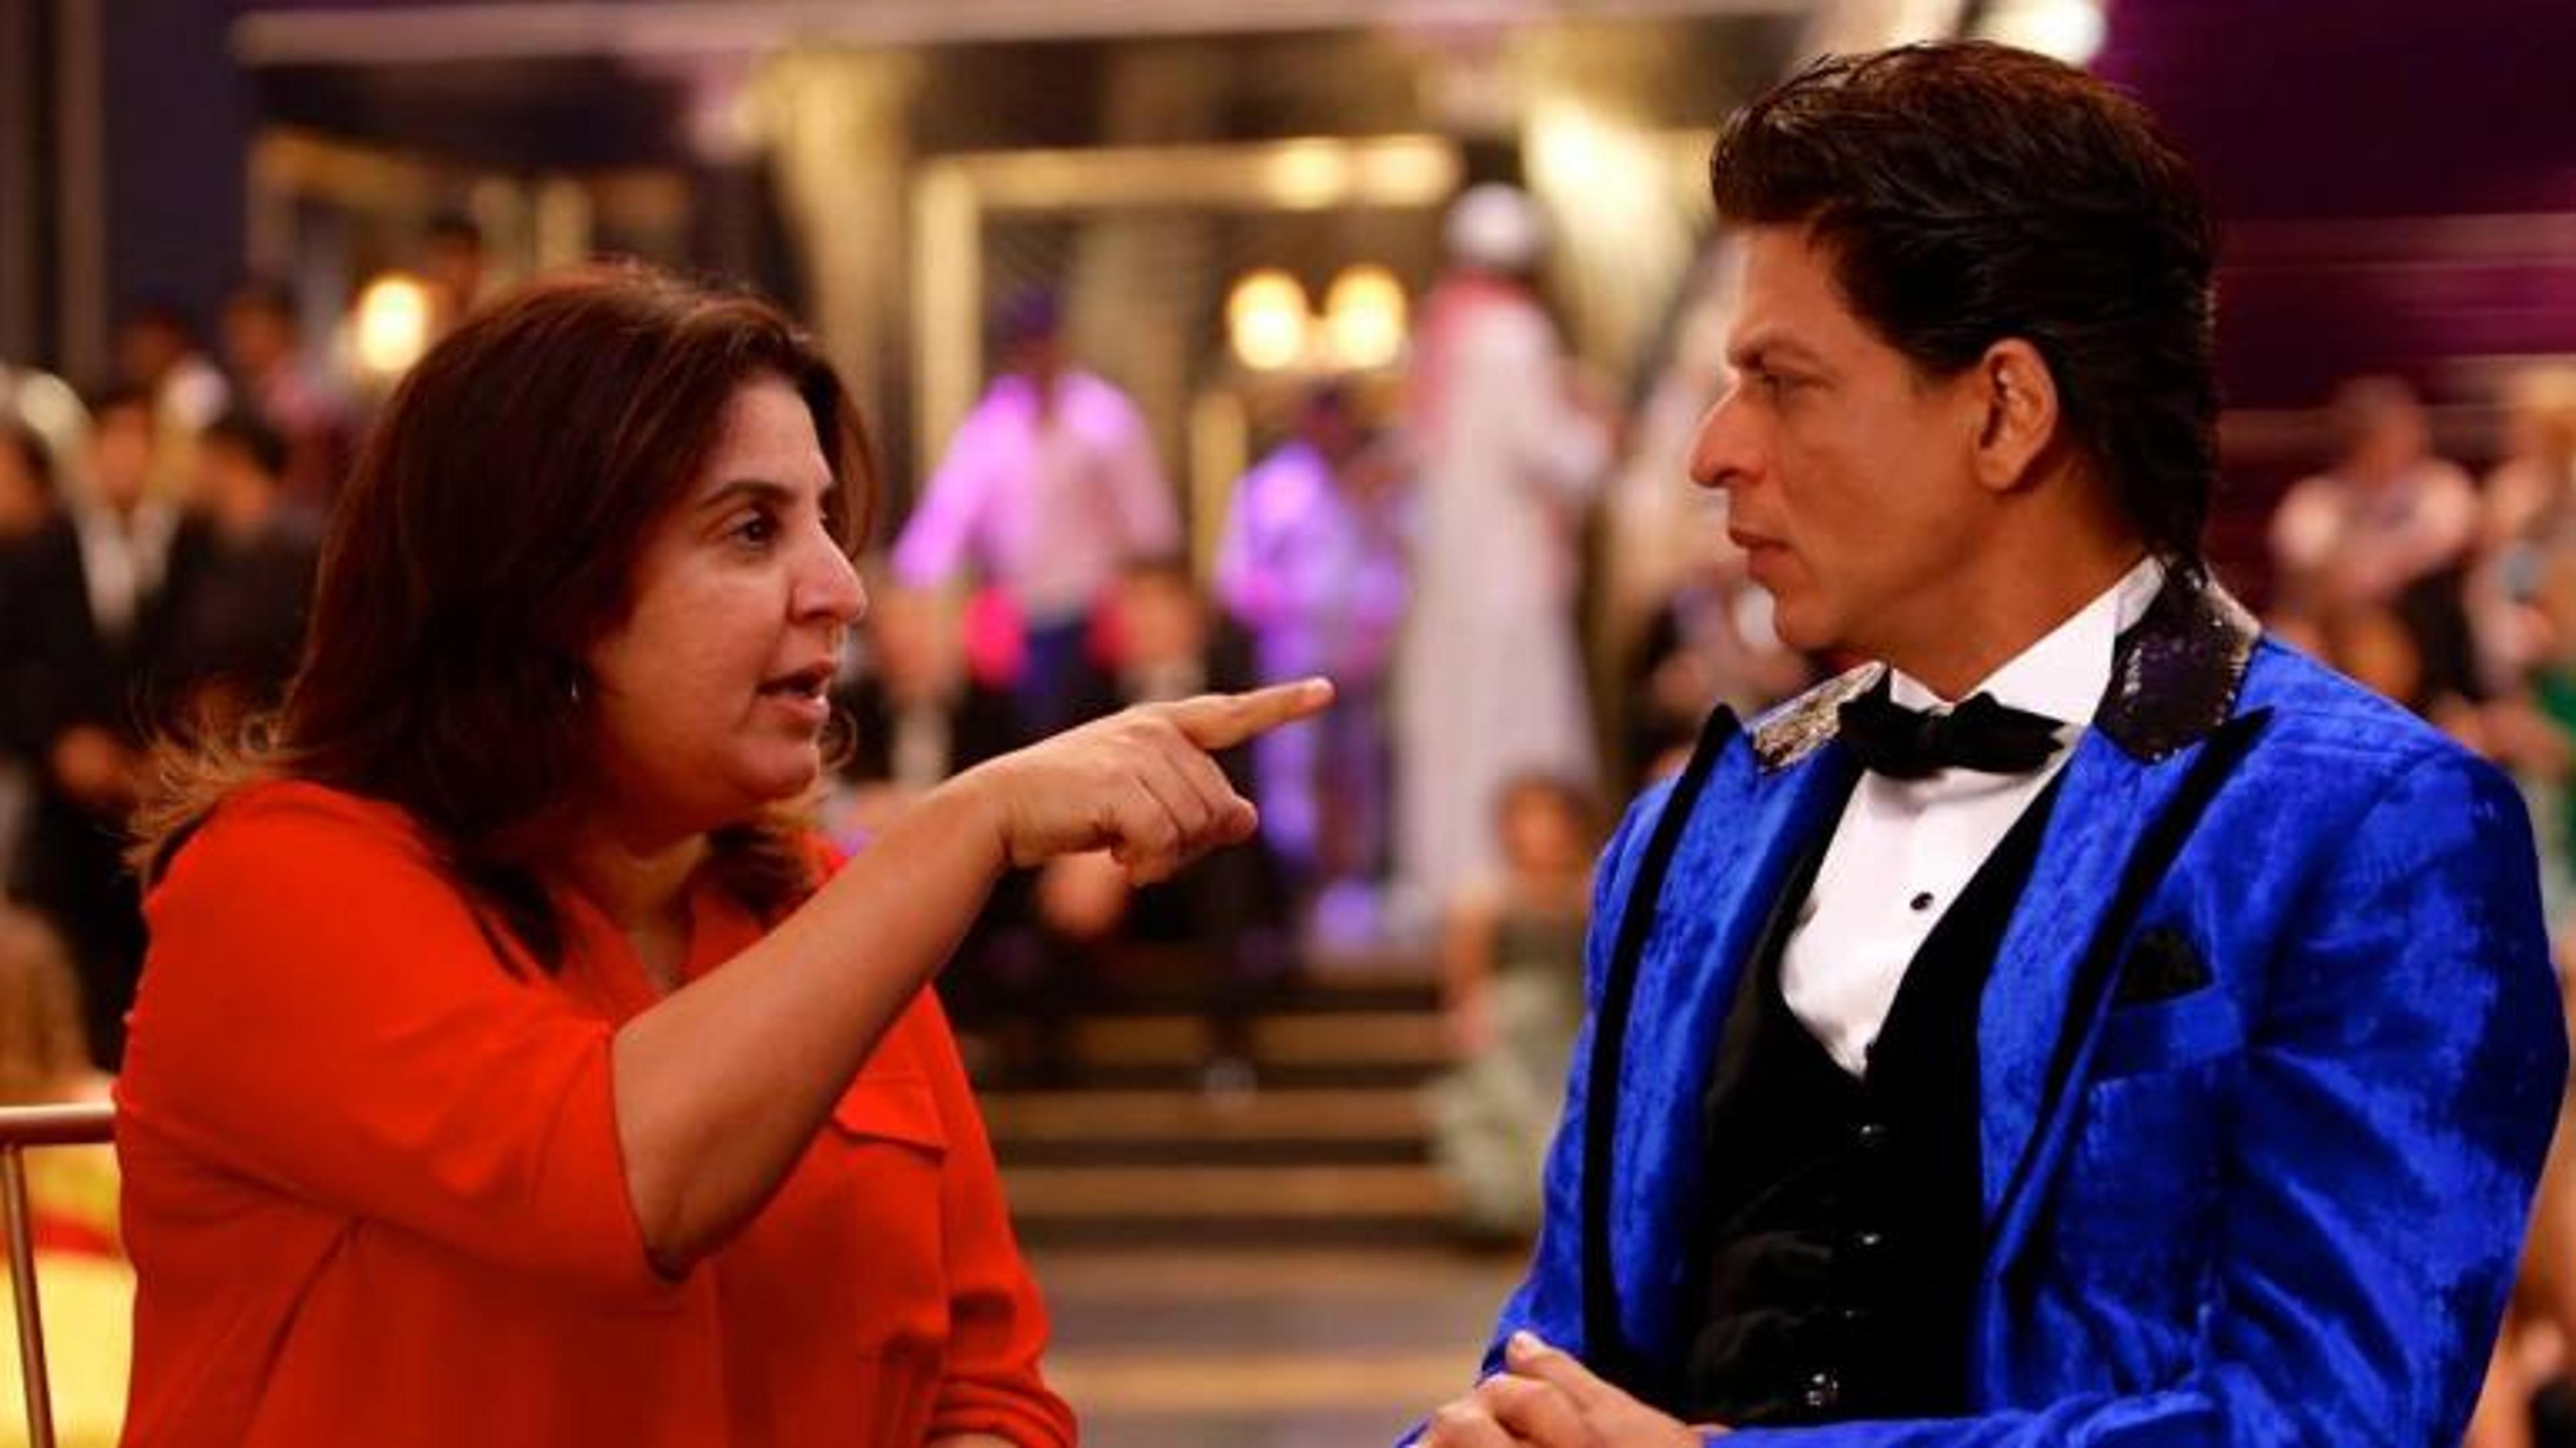 जब पार्टी में शाहरुख खान ने फराह खान के पति को मार दिया था थप्पड़, इस वजह से
आग-बबूला हुए थे SRK